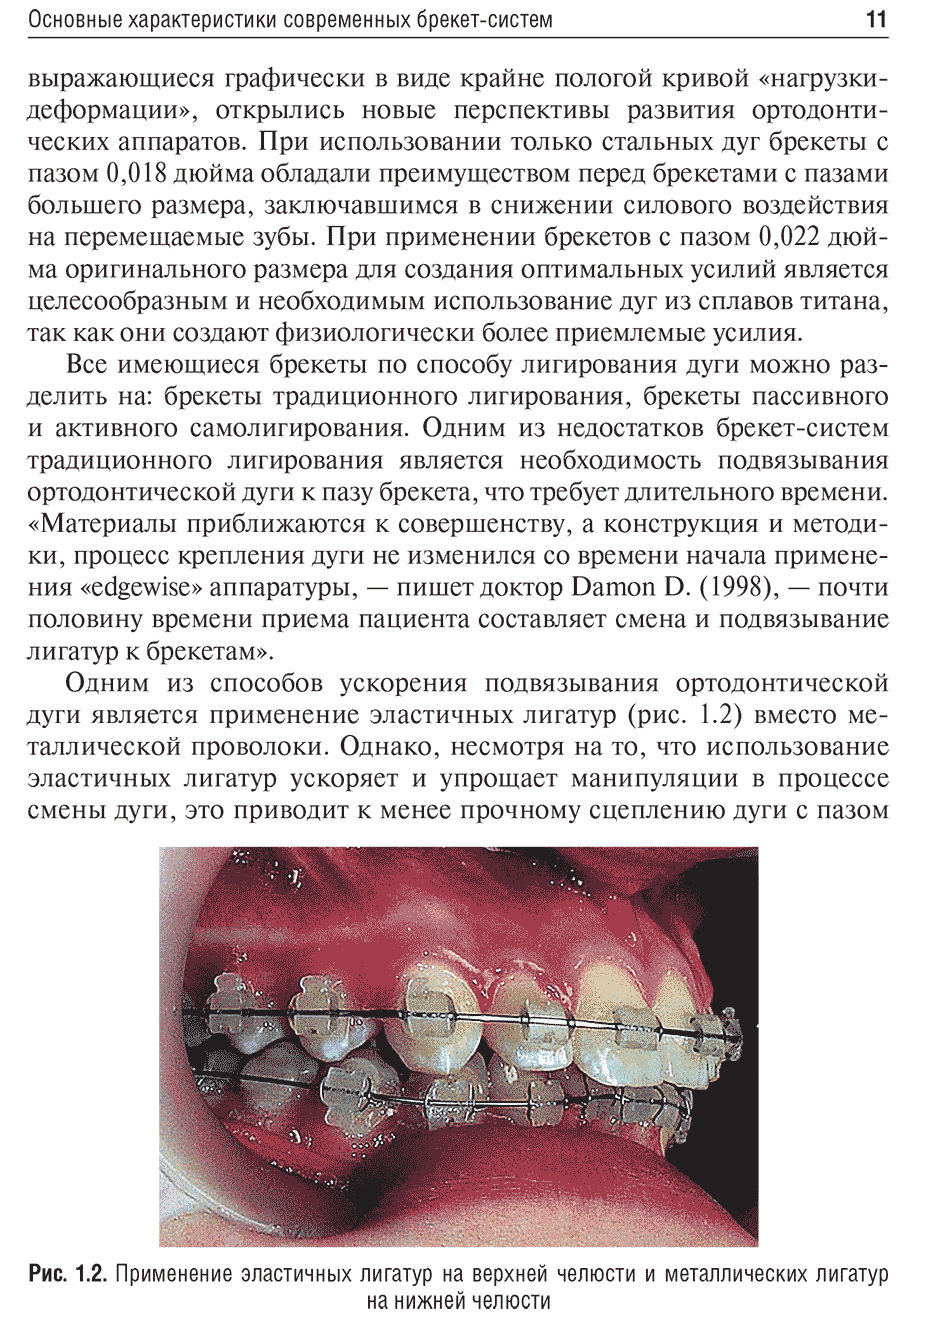 Рис. 1.2. Применение эластичных лигатур на верхней челюсти и металлических лигатур на нижней челюсти